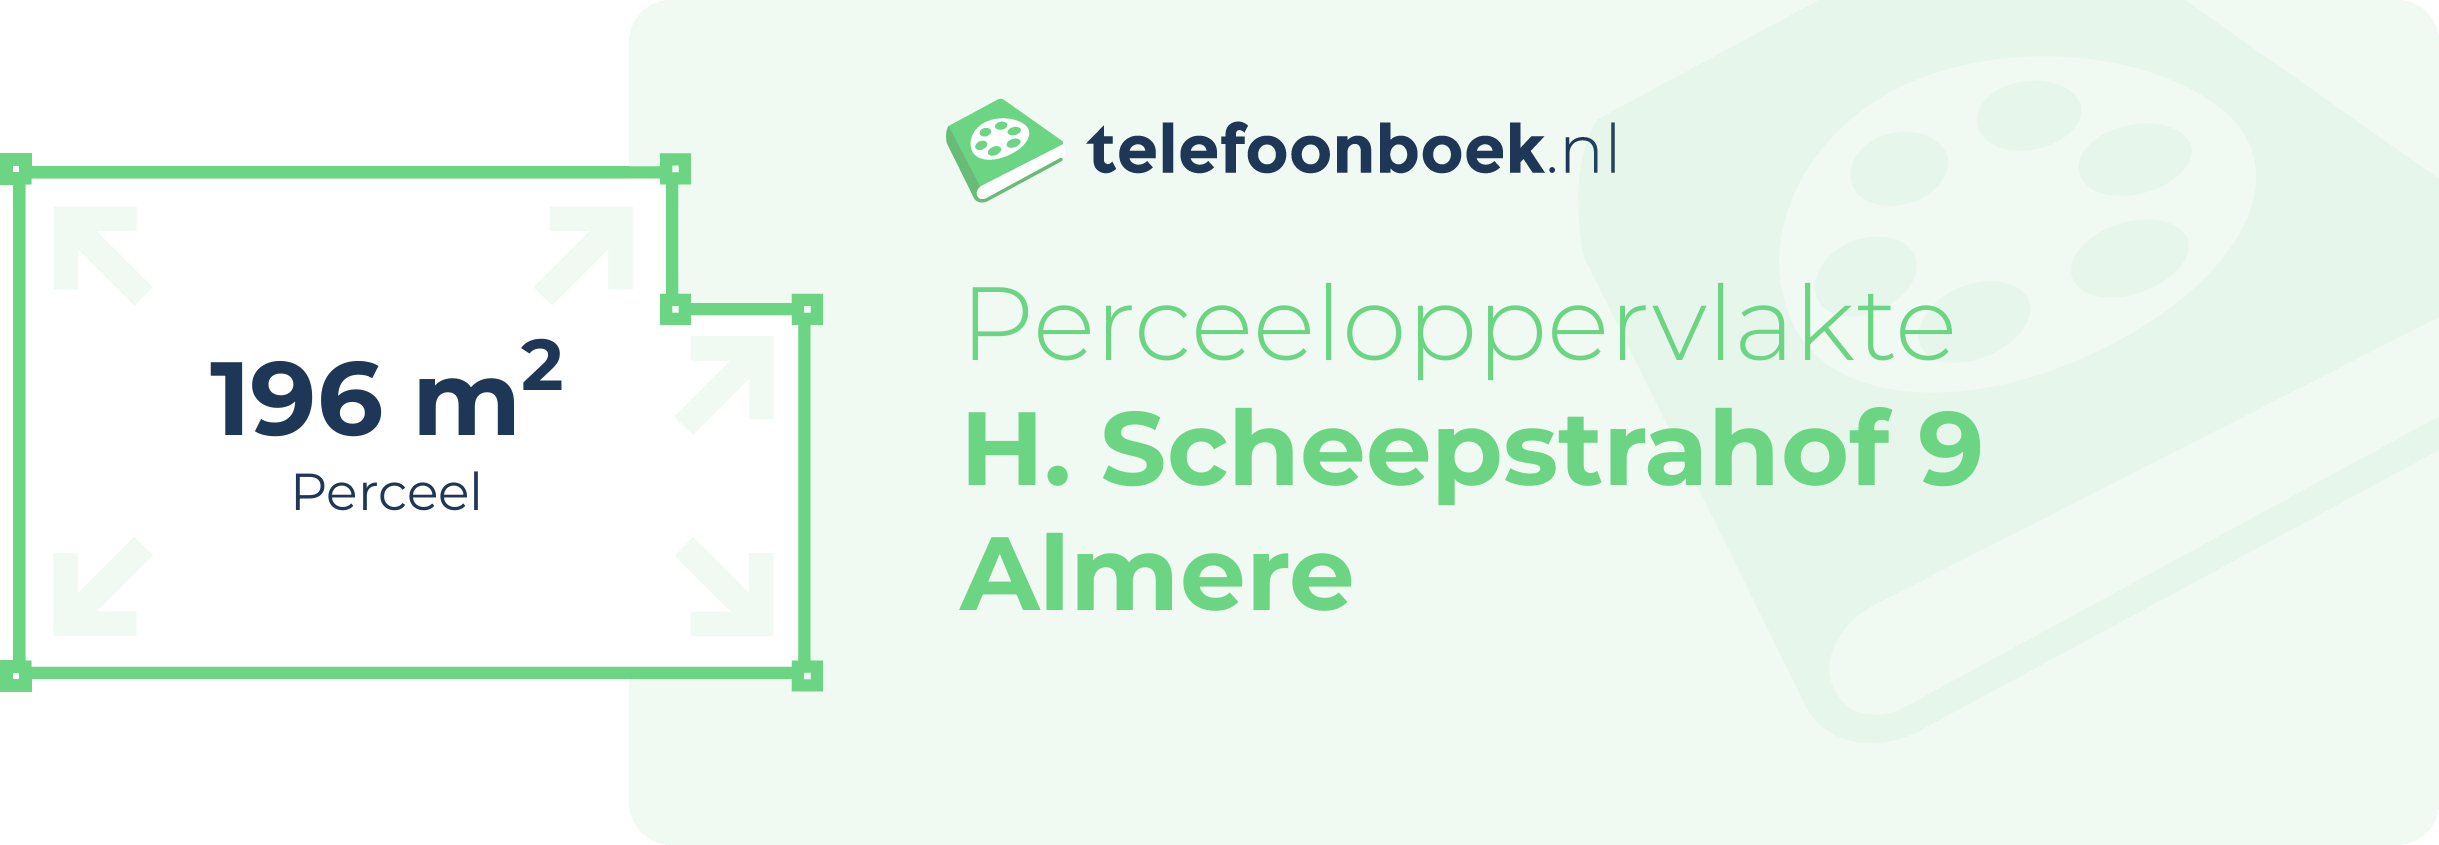 Perceeloppervlakte H. Scheepstrahof 9 Almere